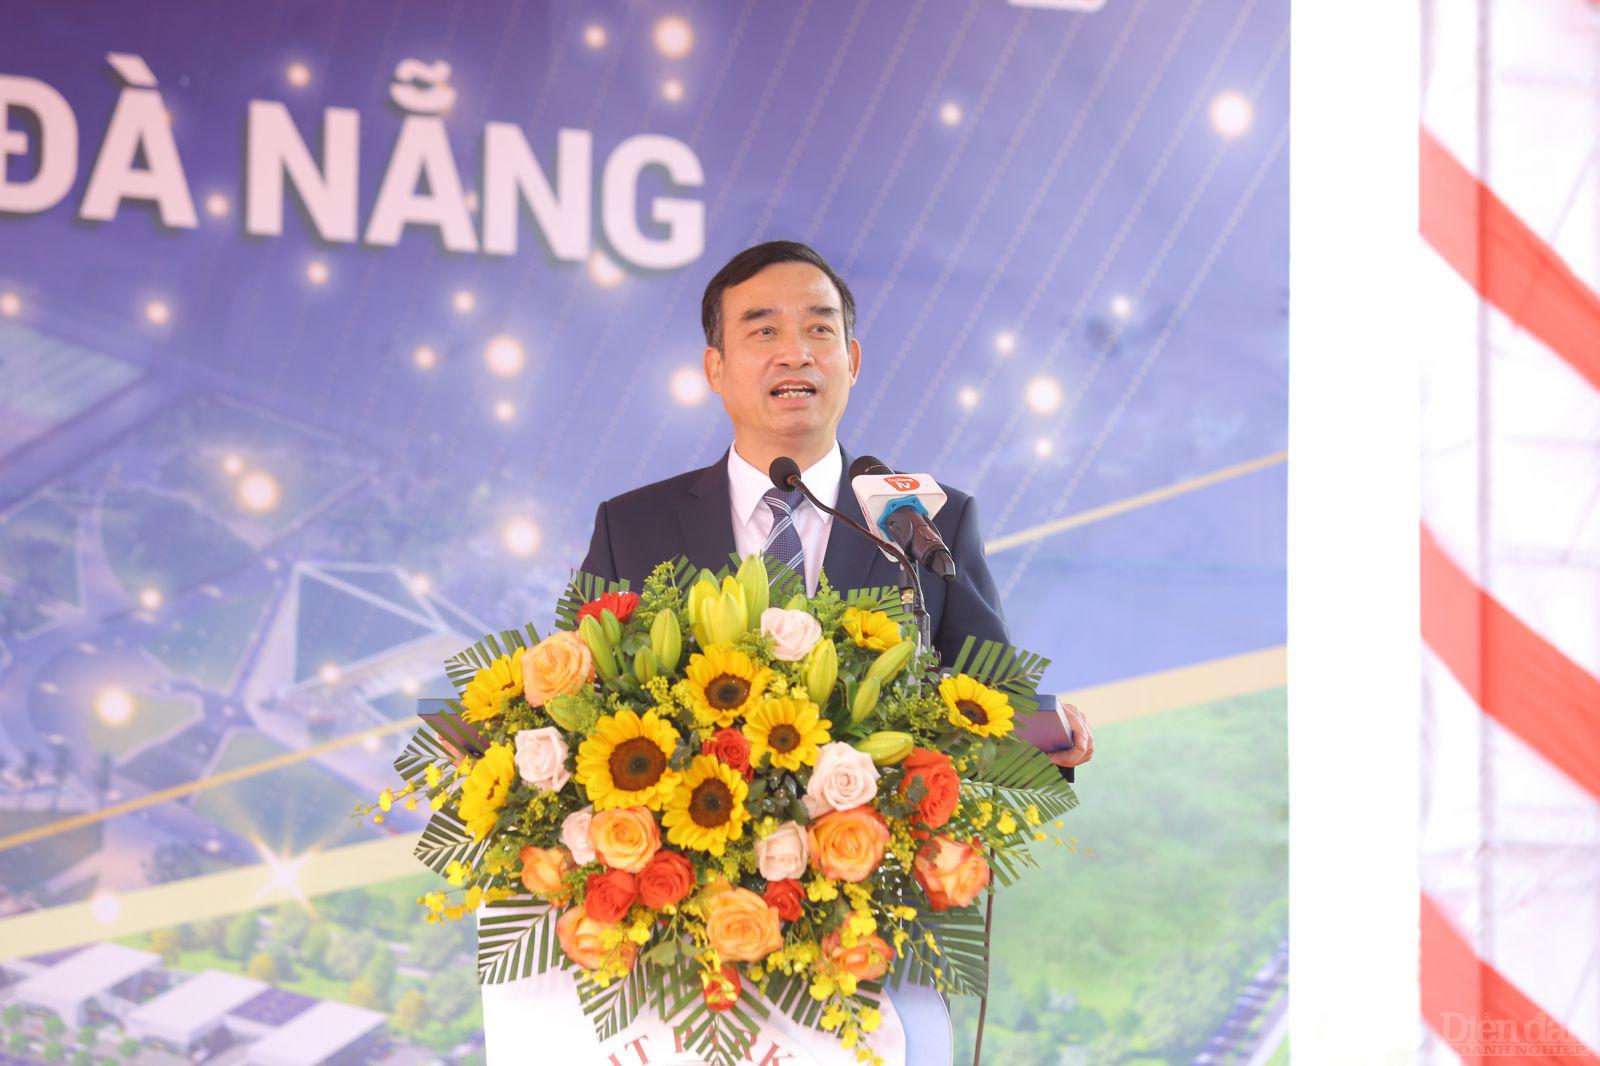 Ông Lê Trung Chinh - Chủ tịch UBND TP. Đà Nẵng khẳng định thành phố luôn đồng hành, chia sẻ với doanh nghiệp về những khó khăn.